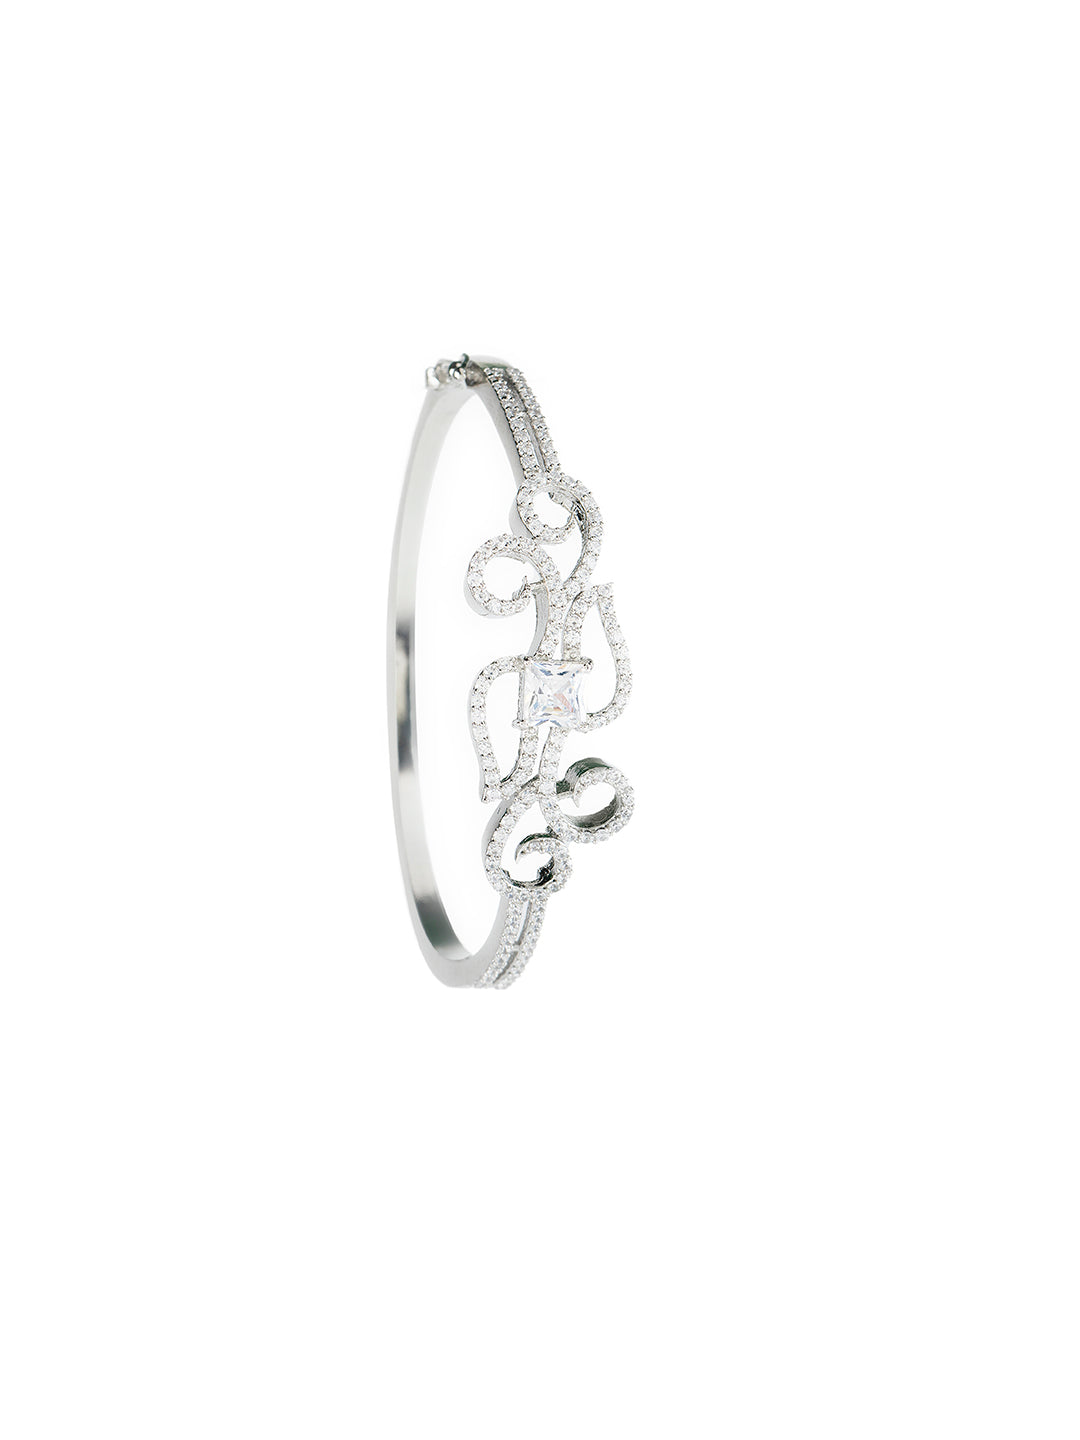 Stunning Vine Design AD Silver-Plated Bracelet